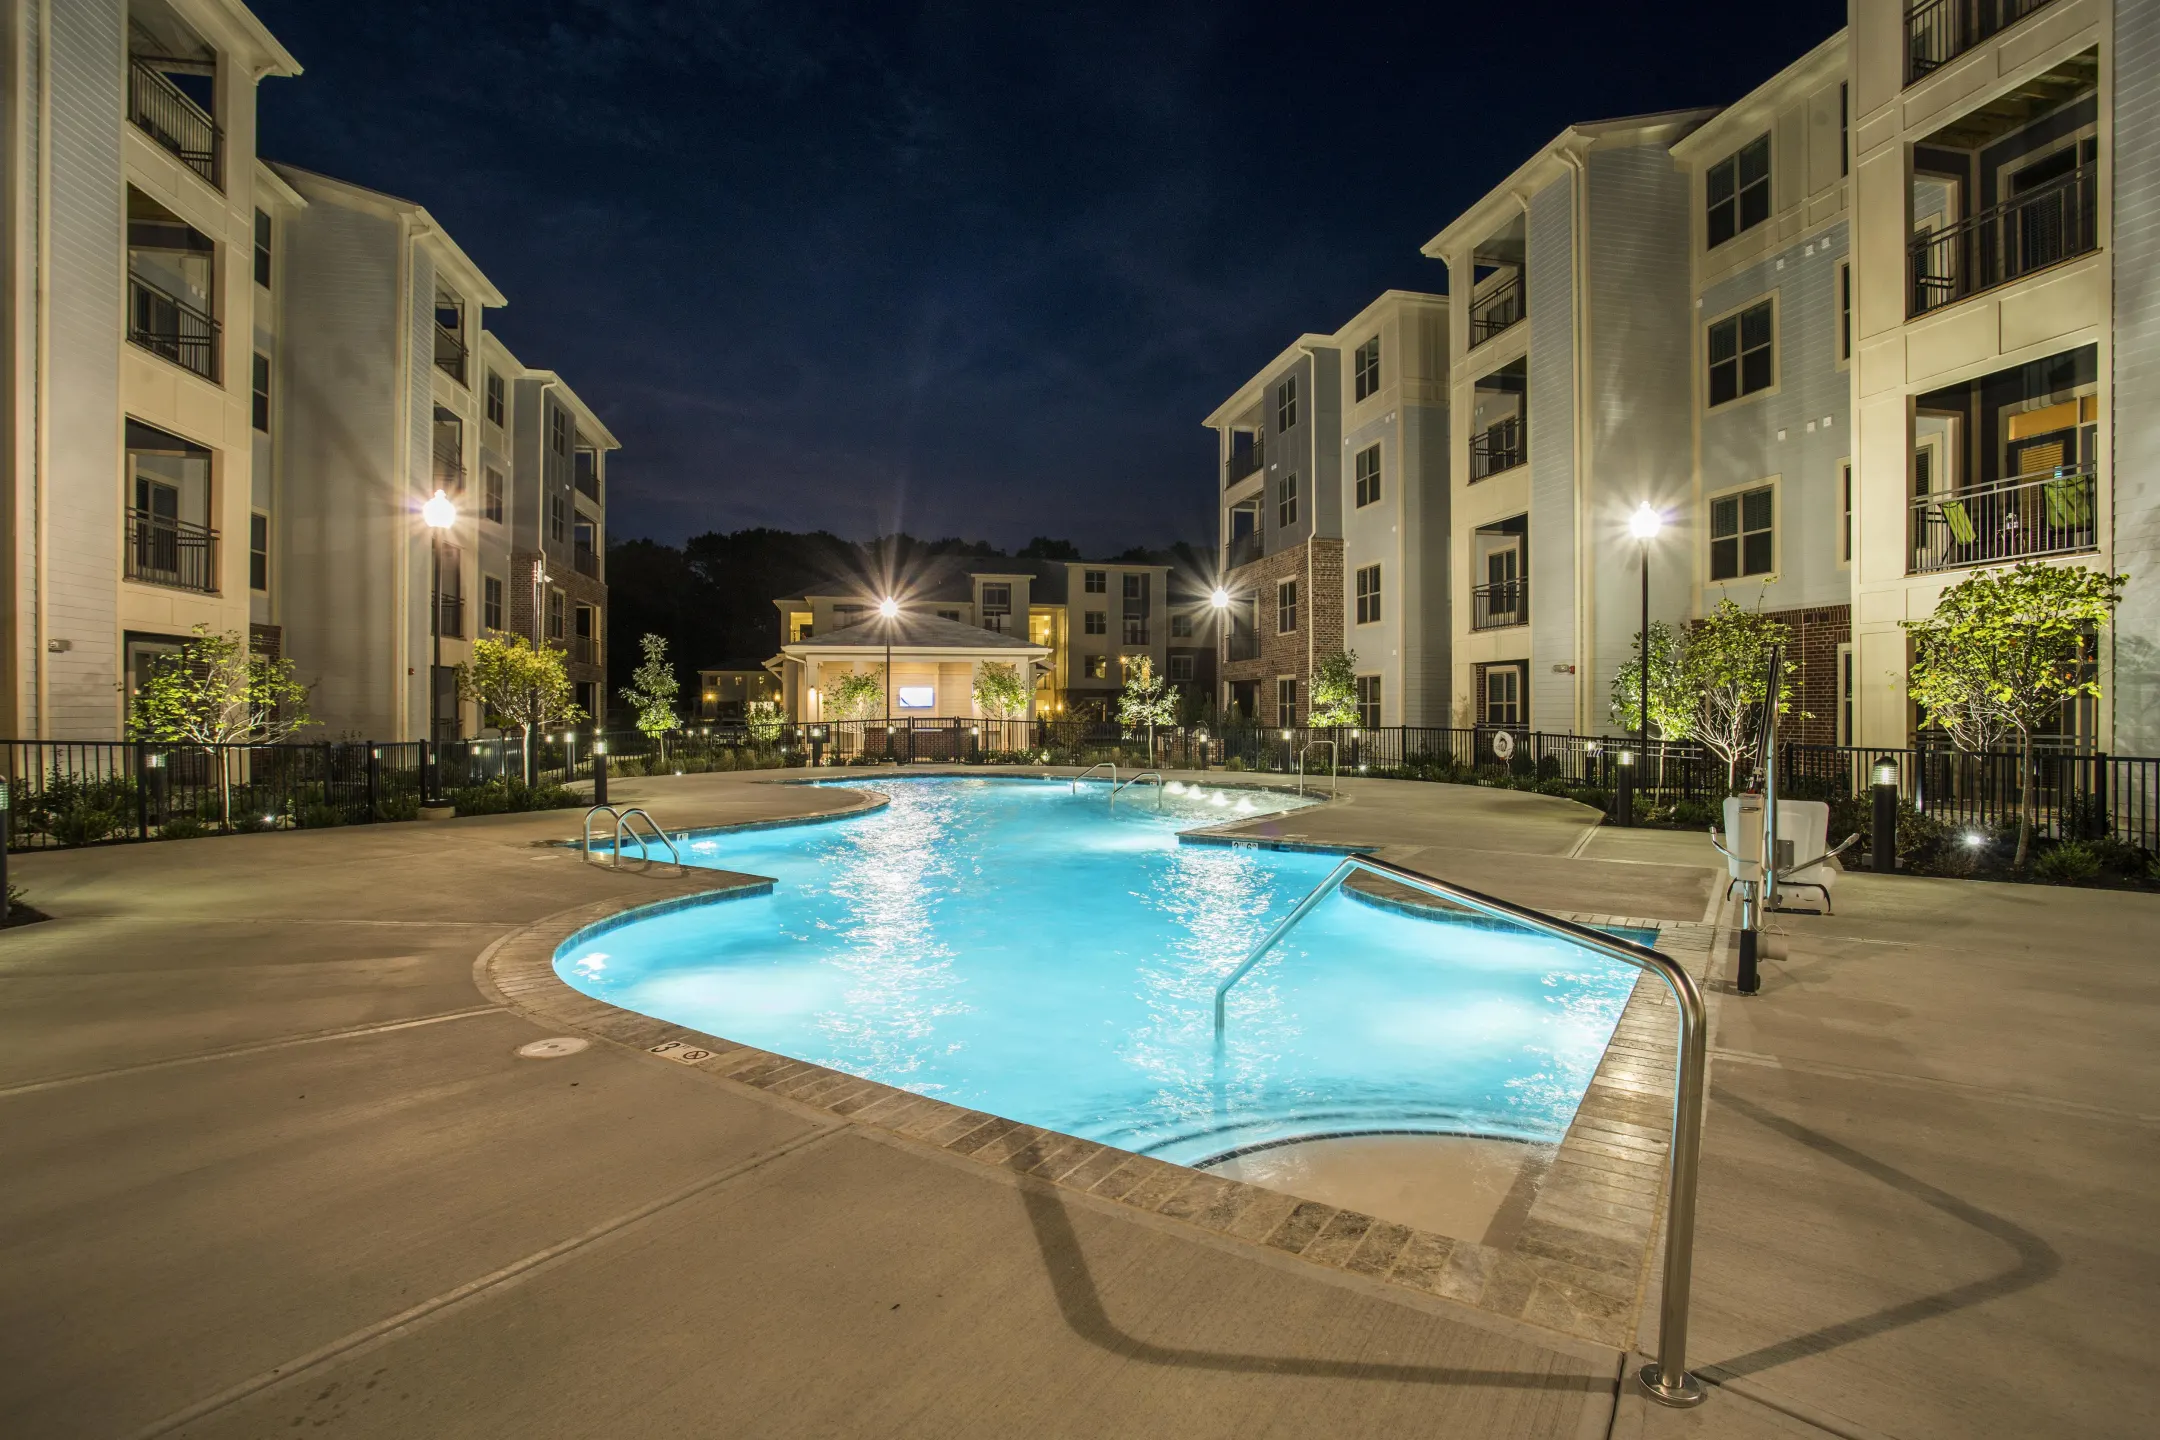 Pool - James River at Stony Point Apartments - Richmond, VA